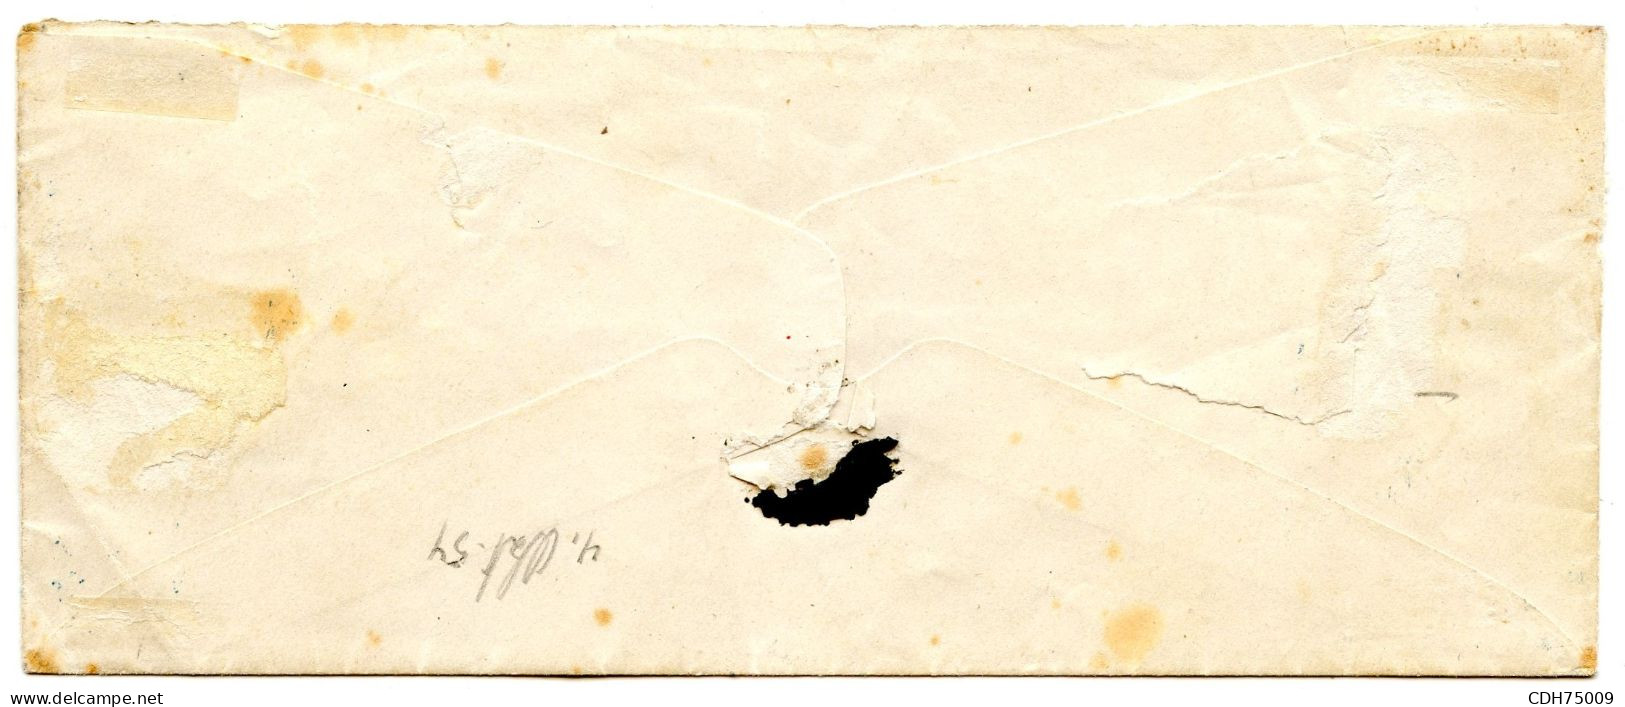 SUISSE - 5 R BRUN ORANGE - 1ER TIRAGE DE MUNICH SUR ENVELOPPE DE GENEVE (MANQUE UN RABAT AU VERSO), 4 OCTOBRE 1854 - Briefe U. Dokumente